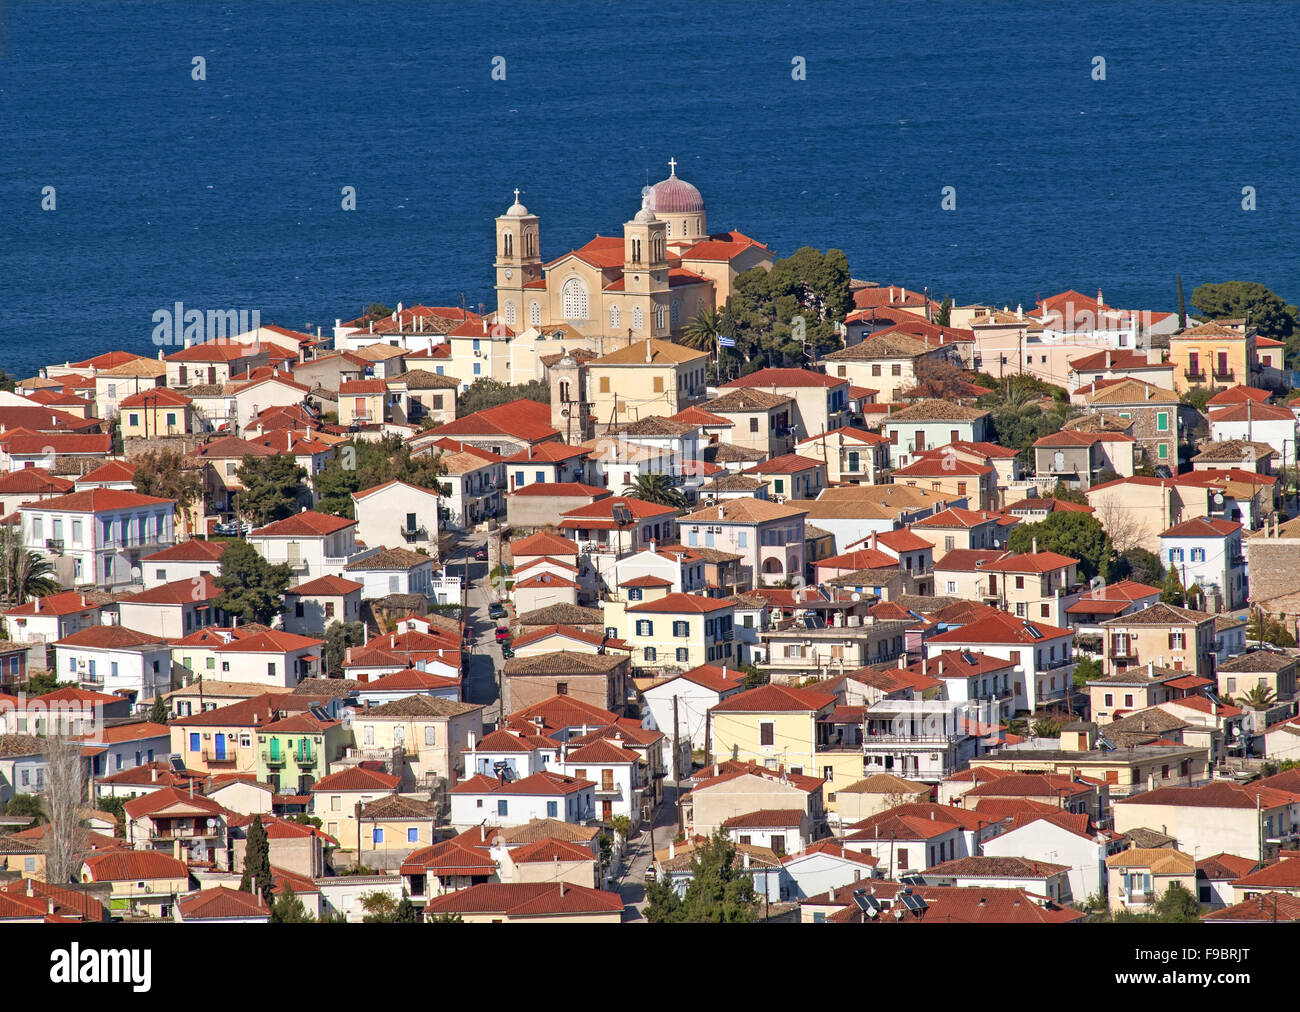 Vue panoramique de la ville traditionnelle de Galaxidi trouvés dans le golfe de Corinthe, dans la région de Fokida, Grèce centrale Banque D'Images